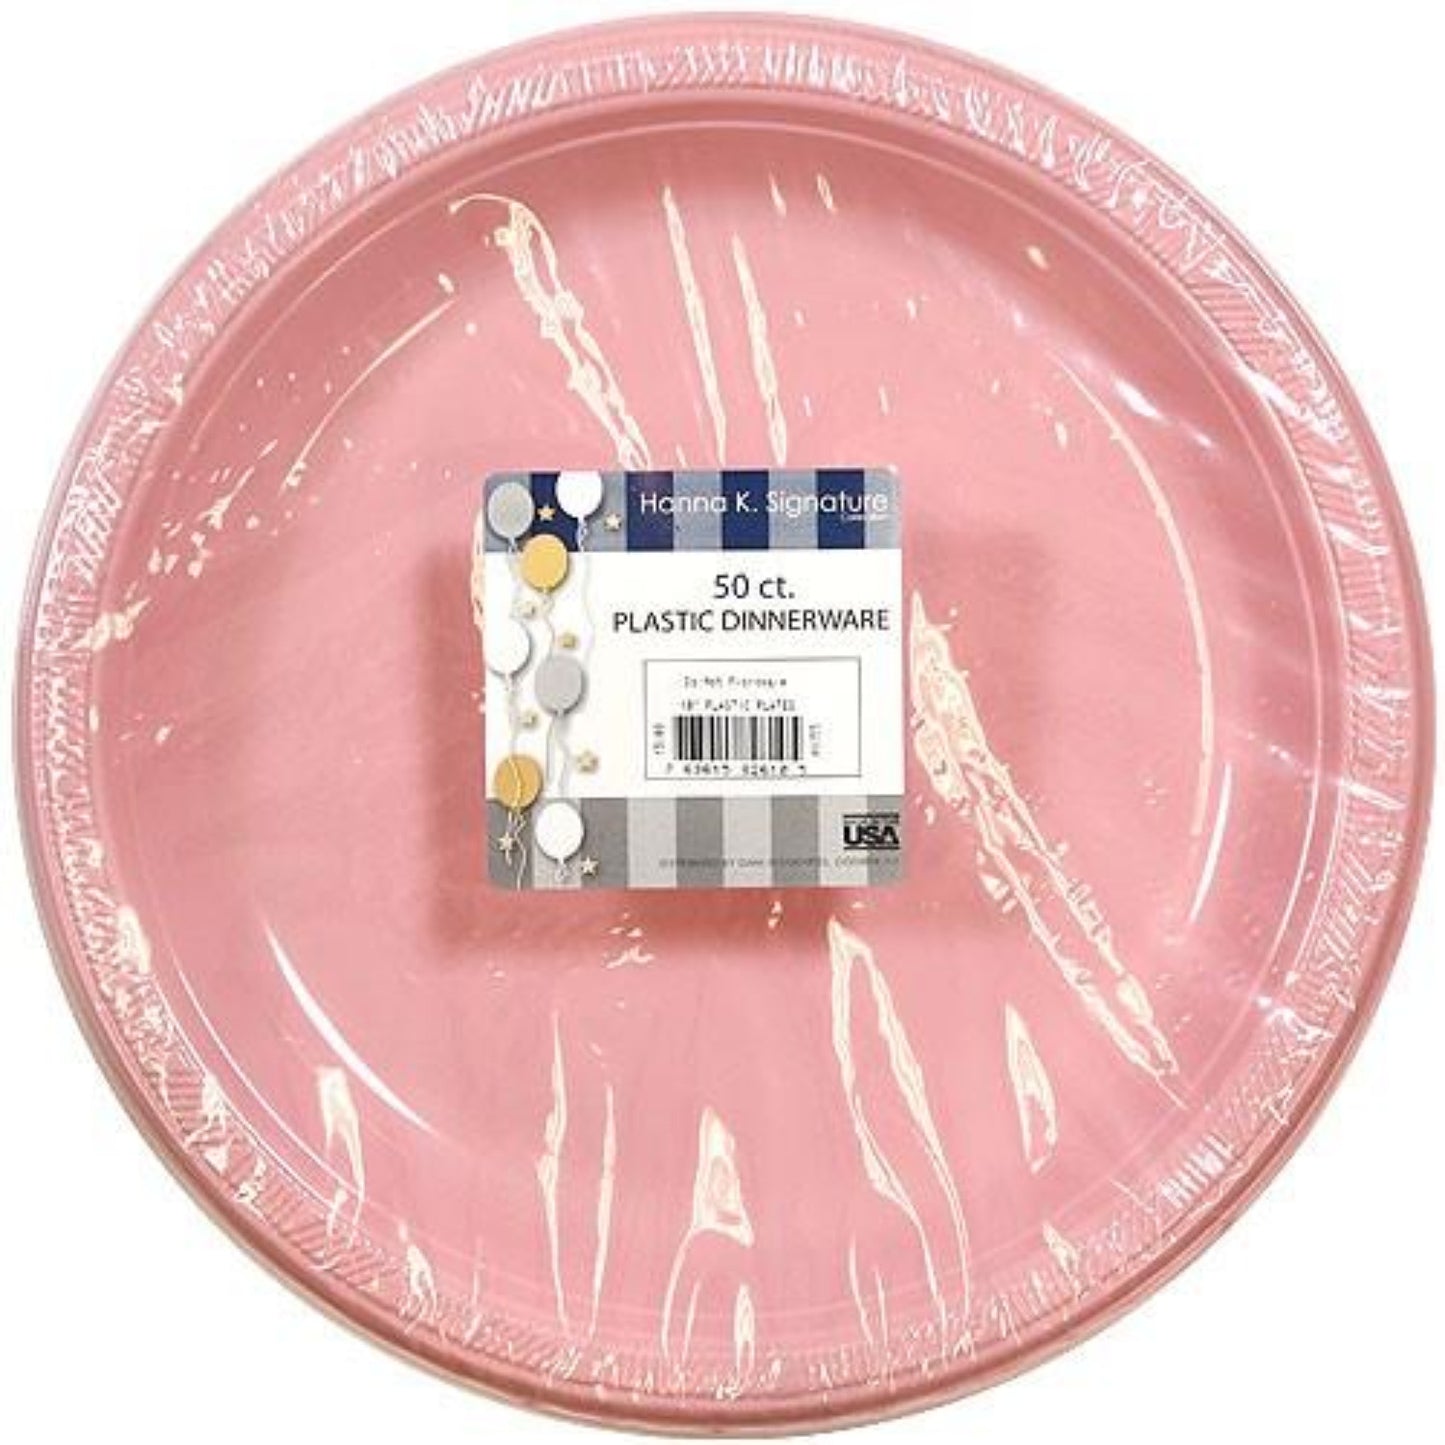 Hanna K. Signature Plastic Plates Pink 9" Plastic Plates Hanna K   